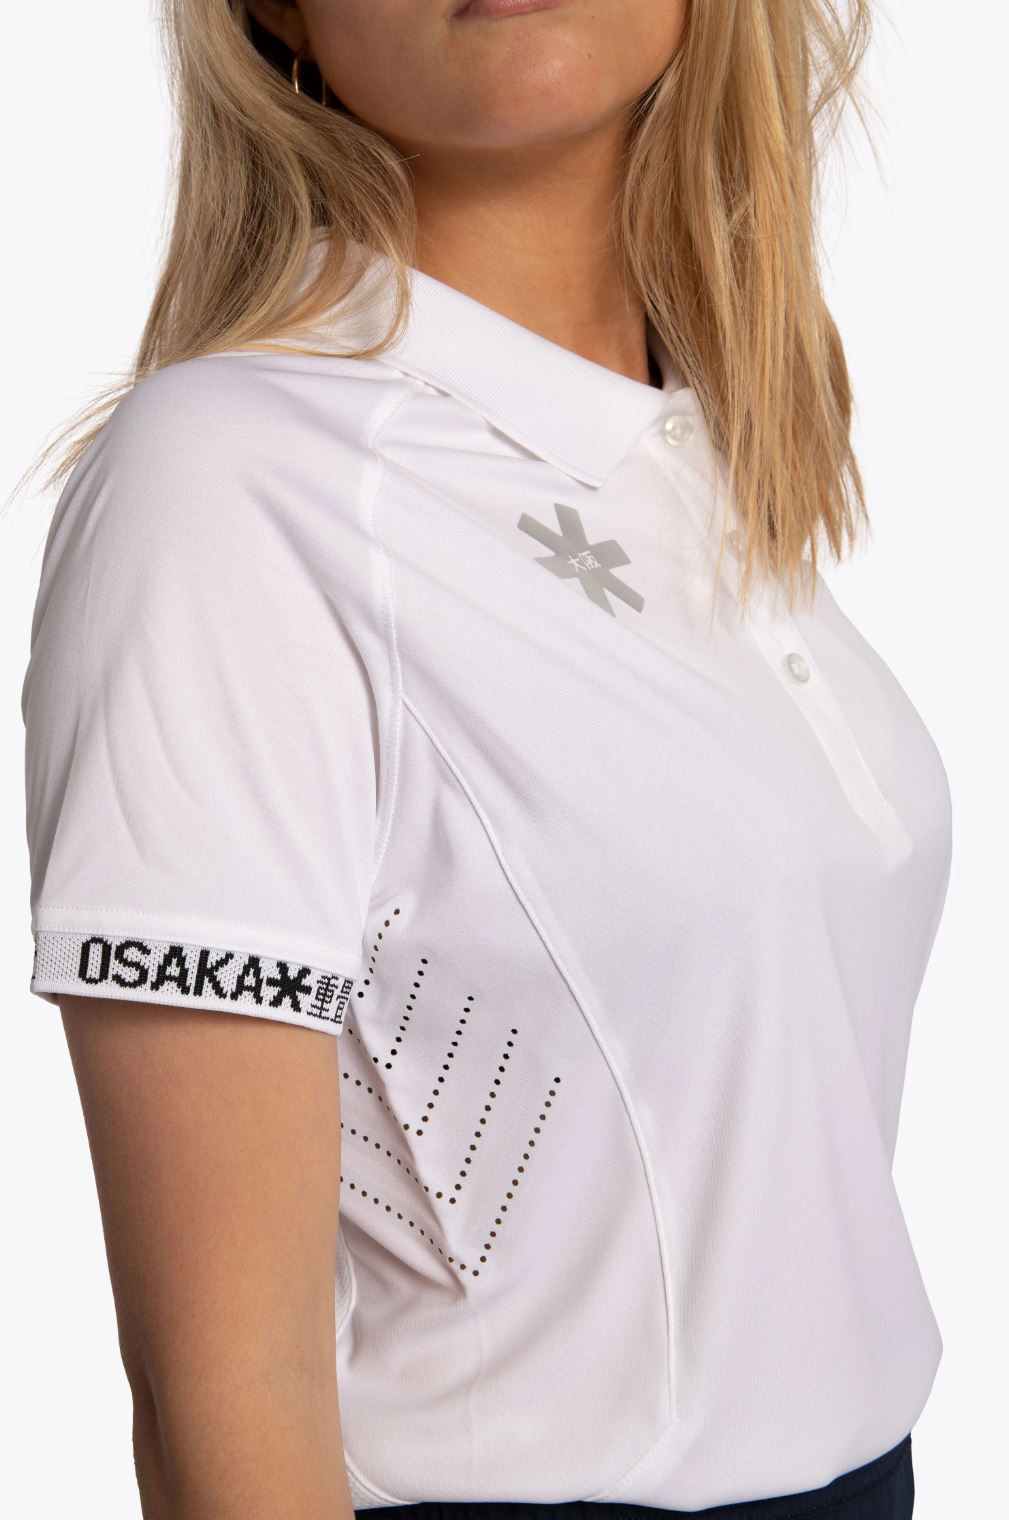 Osaka Women's Polo Jersey (Hvid) - L